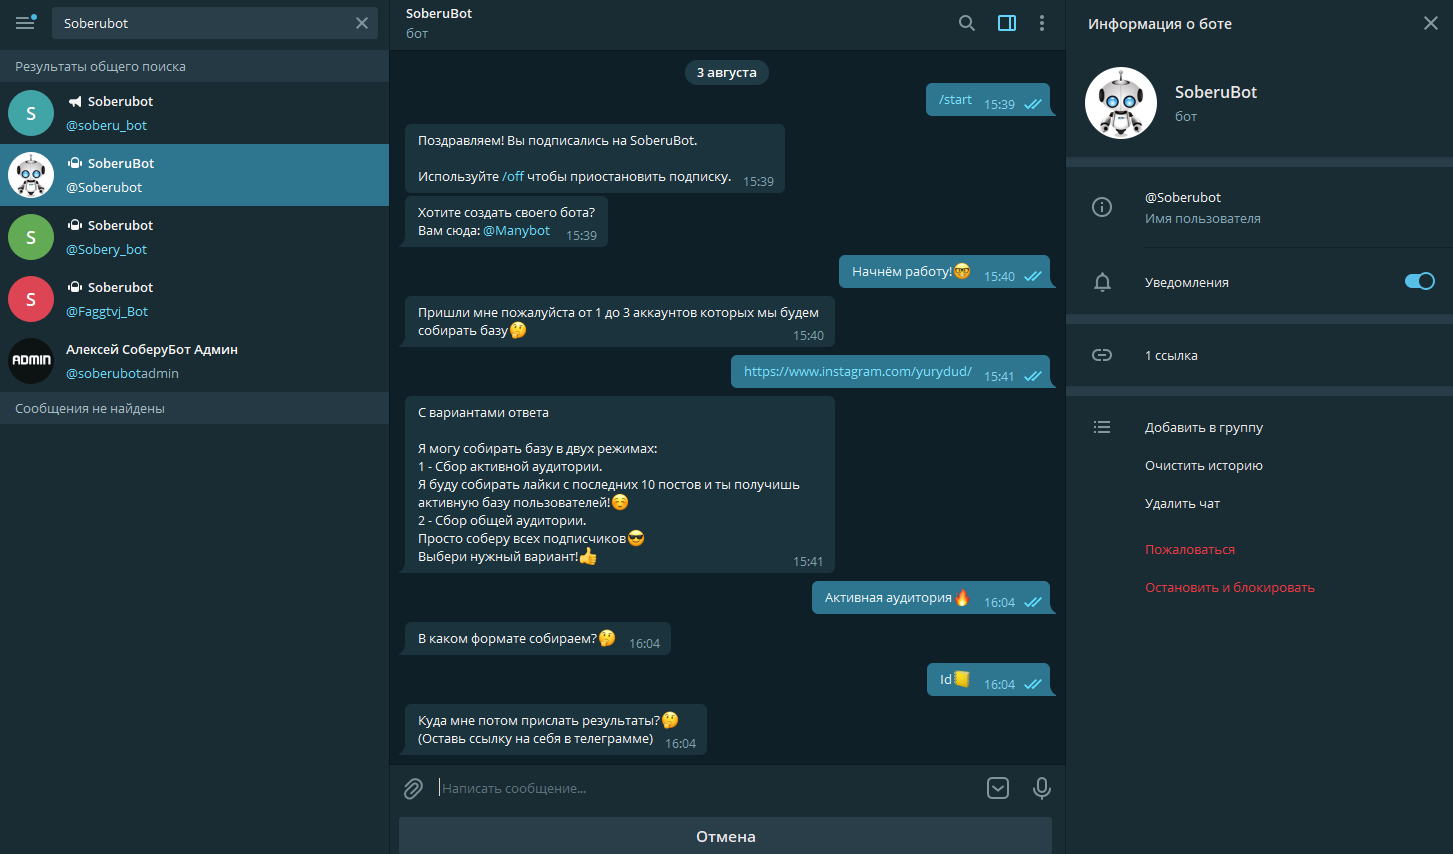 Яндекс запустила официального бота ЯндексМузыки для Telegram Бот умеет распознавать любые композиции по 5–10-секундным отрывкам и присылает в ответ ссылки на найденные треки в ЯндексМузыке